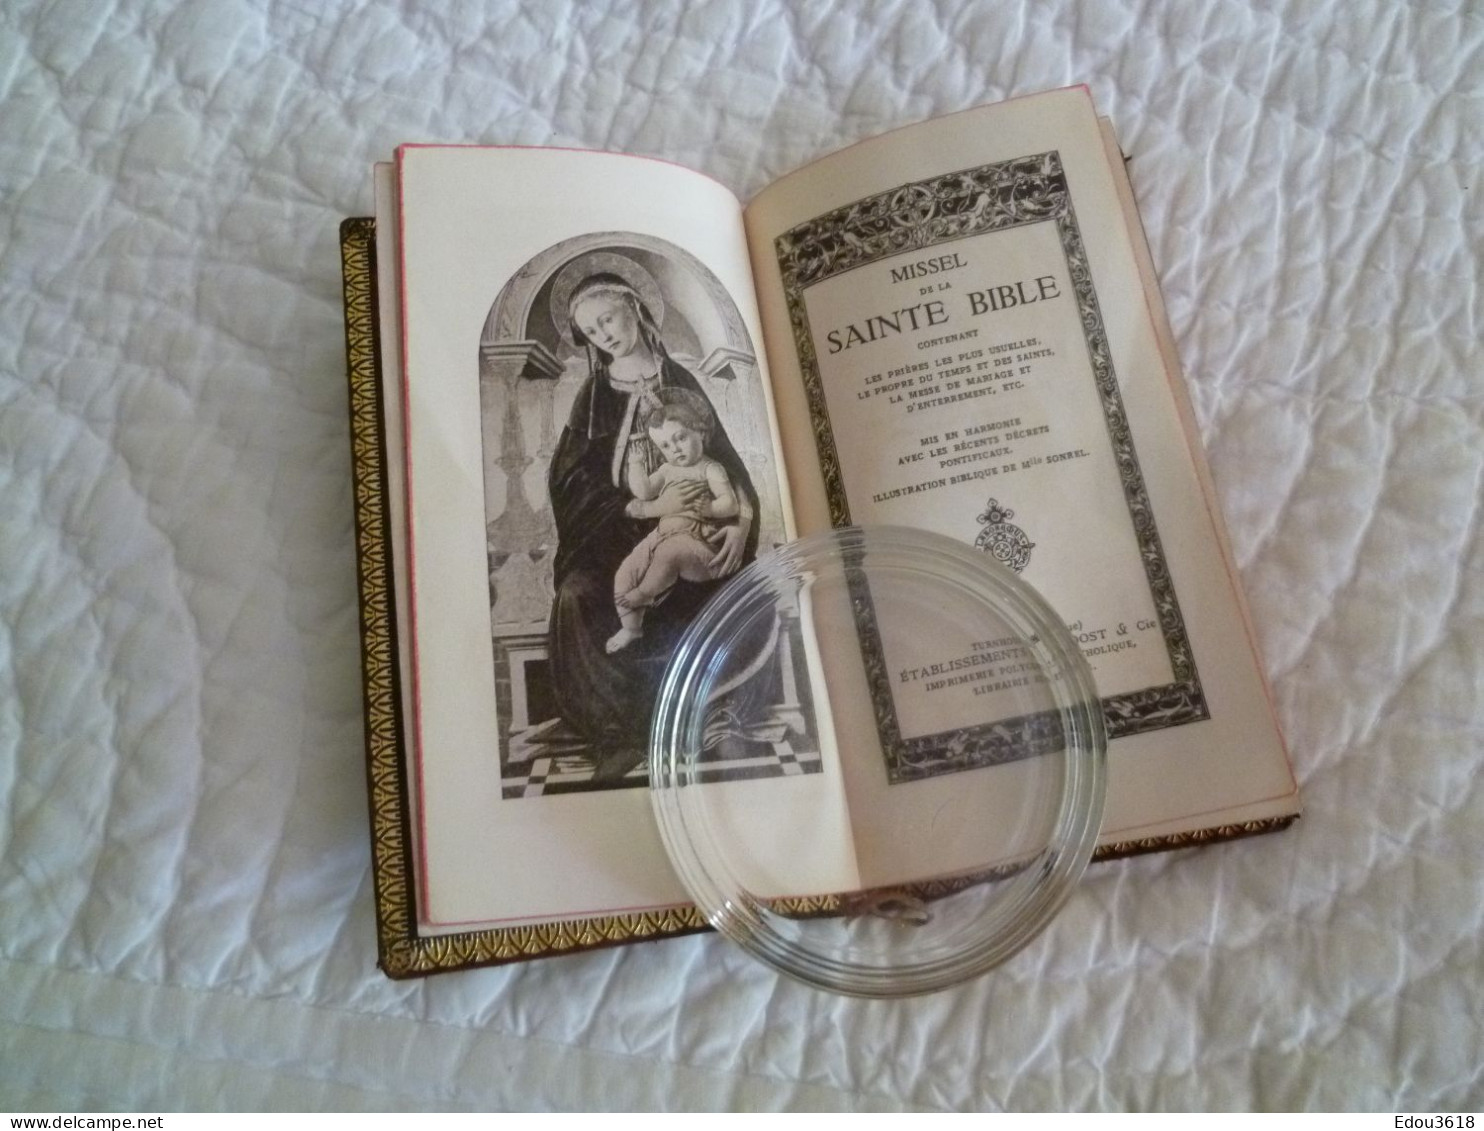 Missel de la Sainte Bible Reliure cuir avec liseret doré & écrin - Imprimatur F. Tessens éditeur Turnhout Belgique 1934